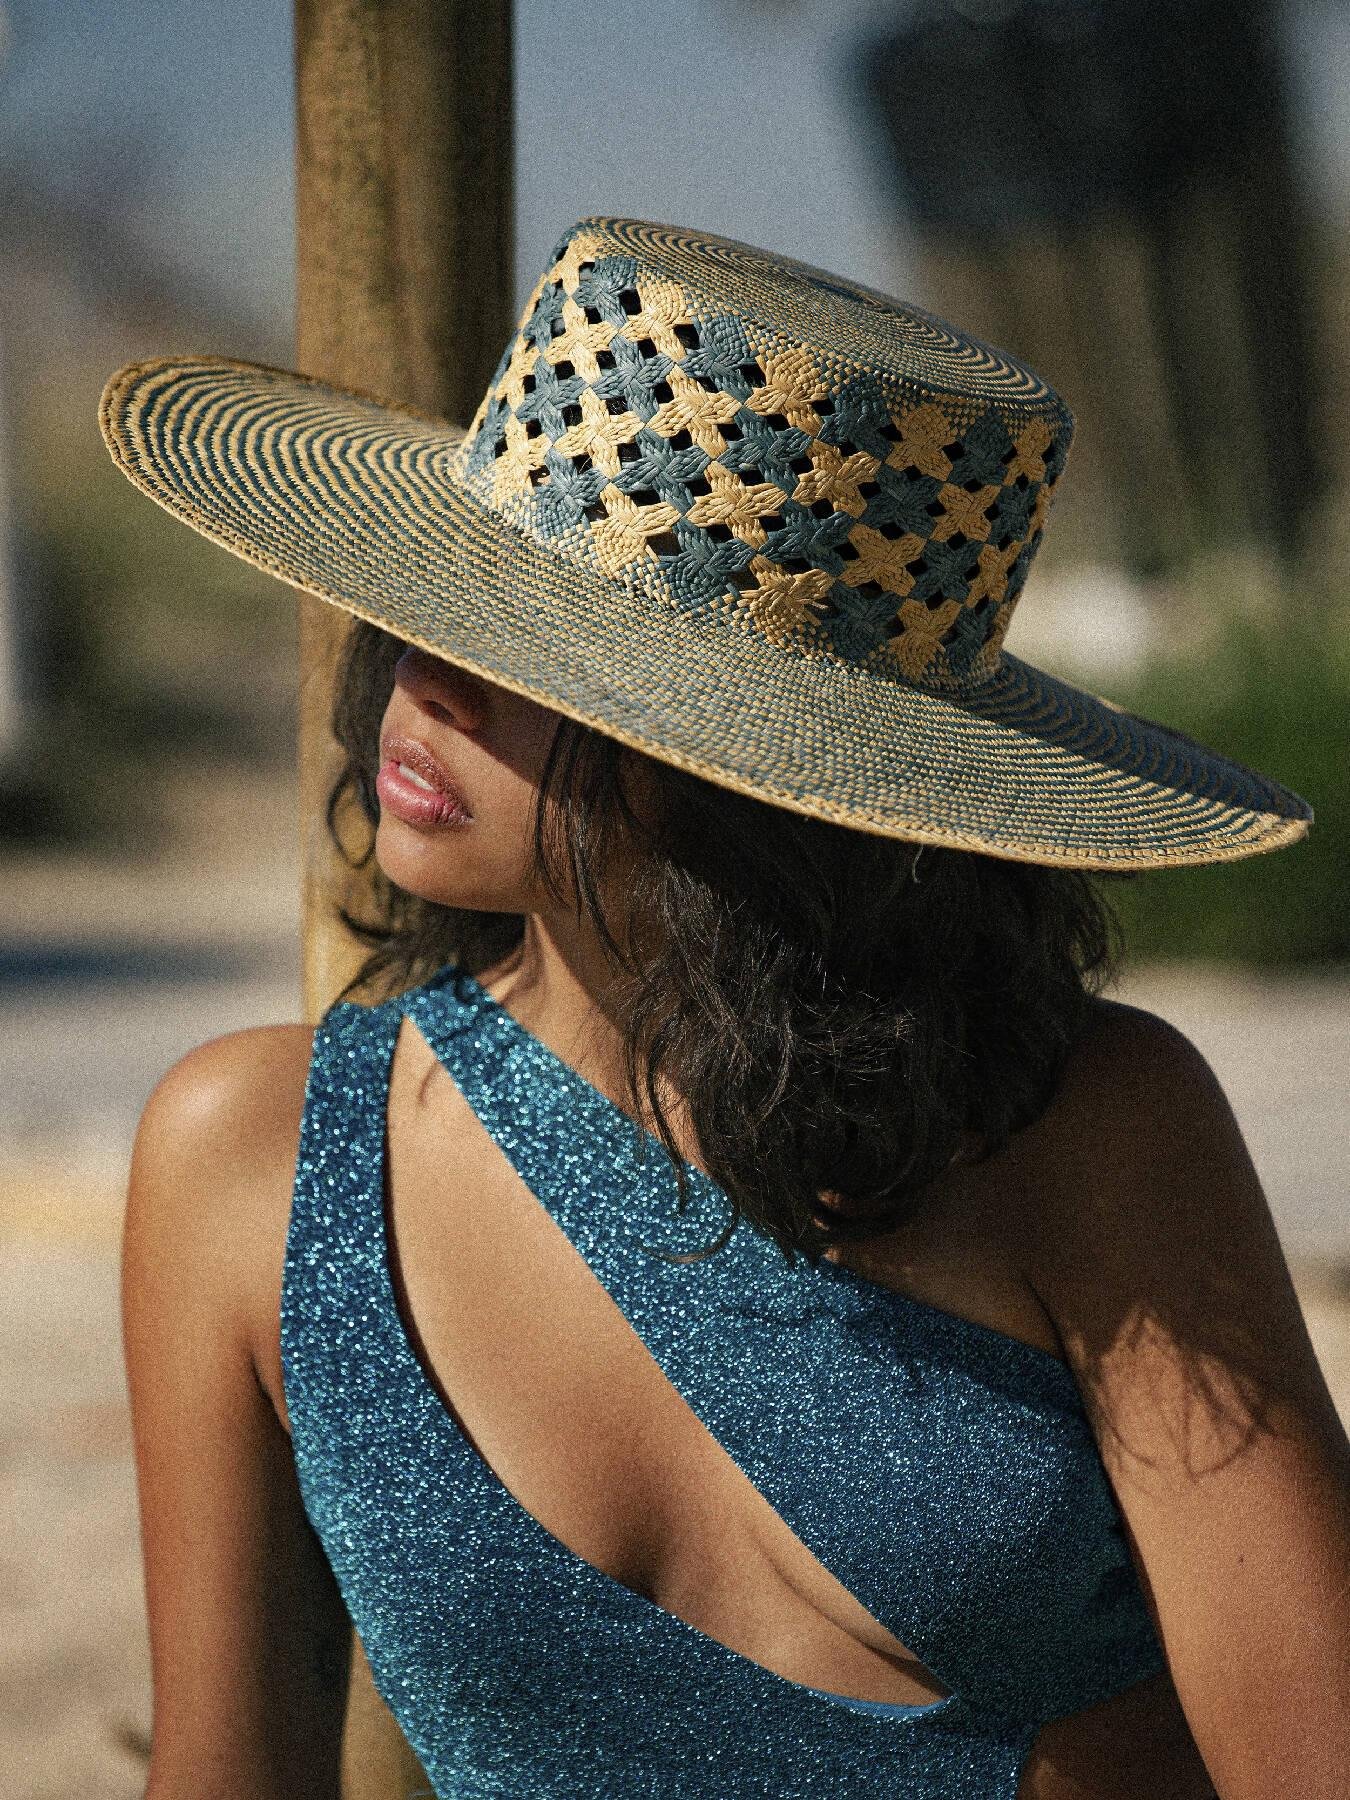 Mar Azul - Limited Edition Wide Brim Panama Hat by ELEGANCIA TROPICAL HATS